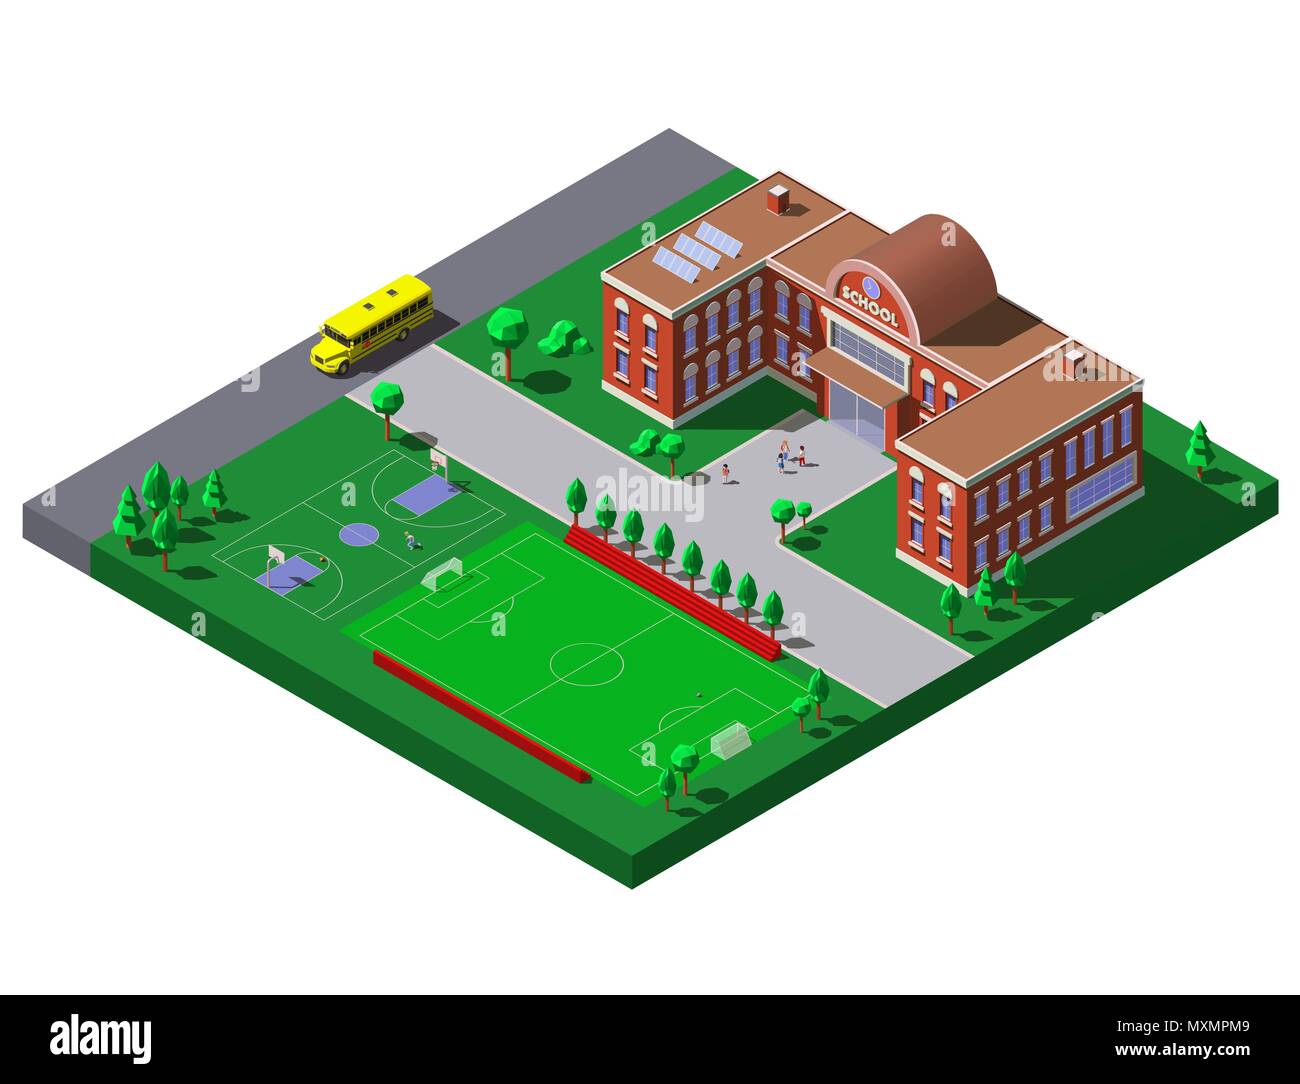 Edificio scolastico con calcio, campo da tennis e scuola bus. Vettore illustrazione isometrica. Illustrazione Vettoriale